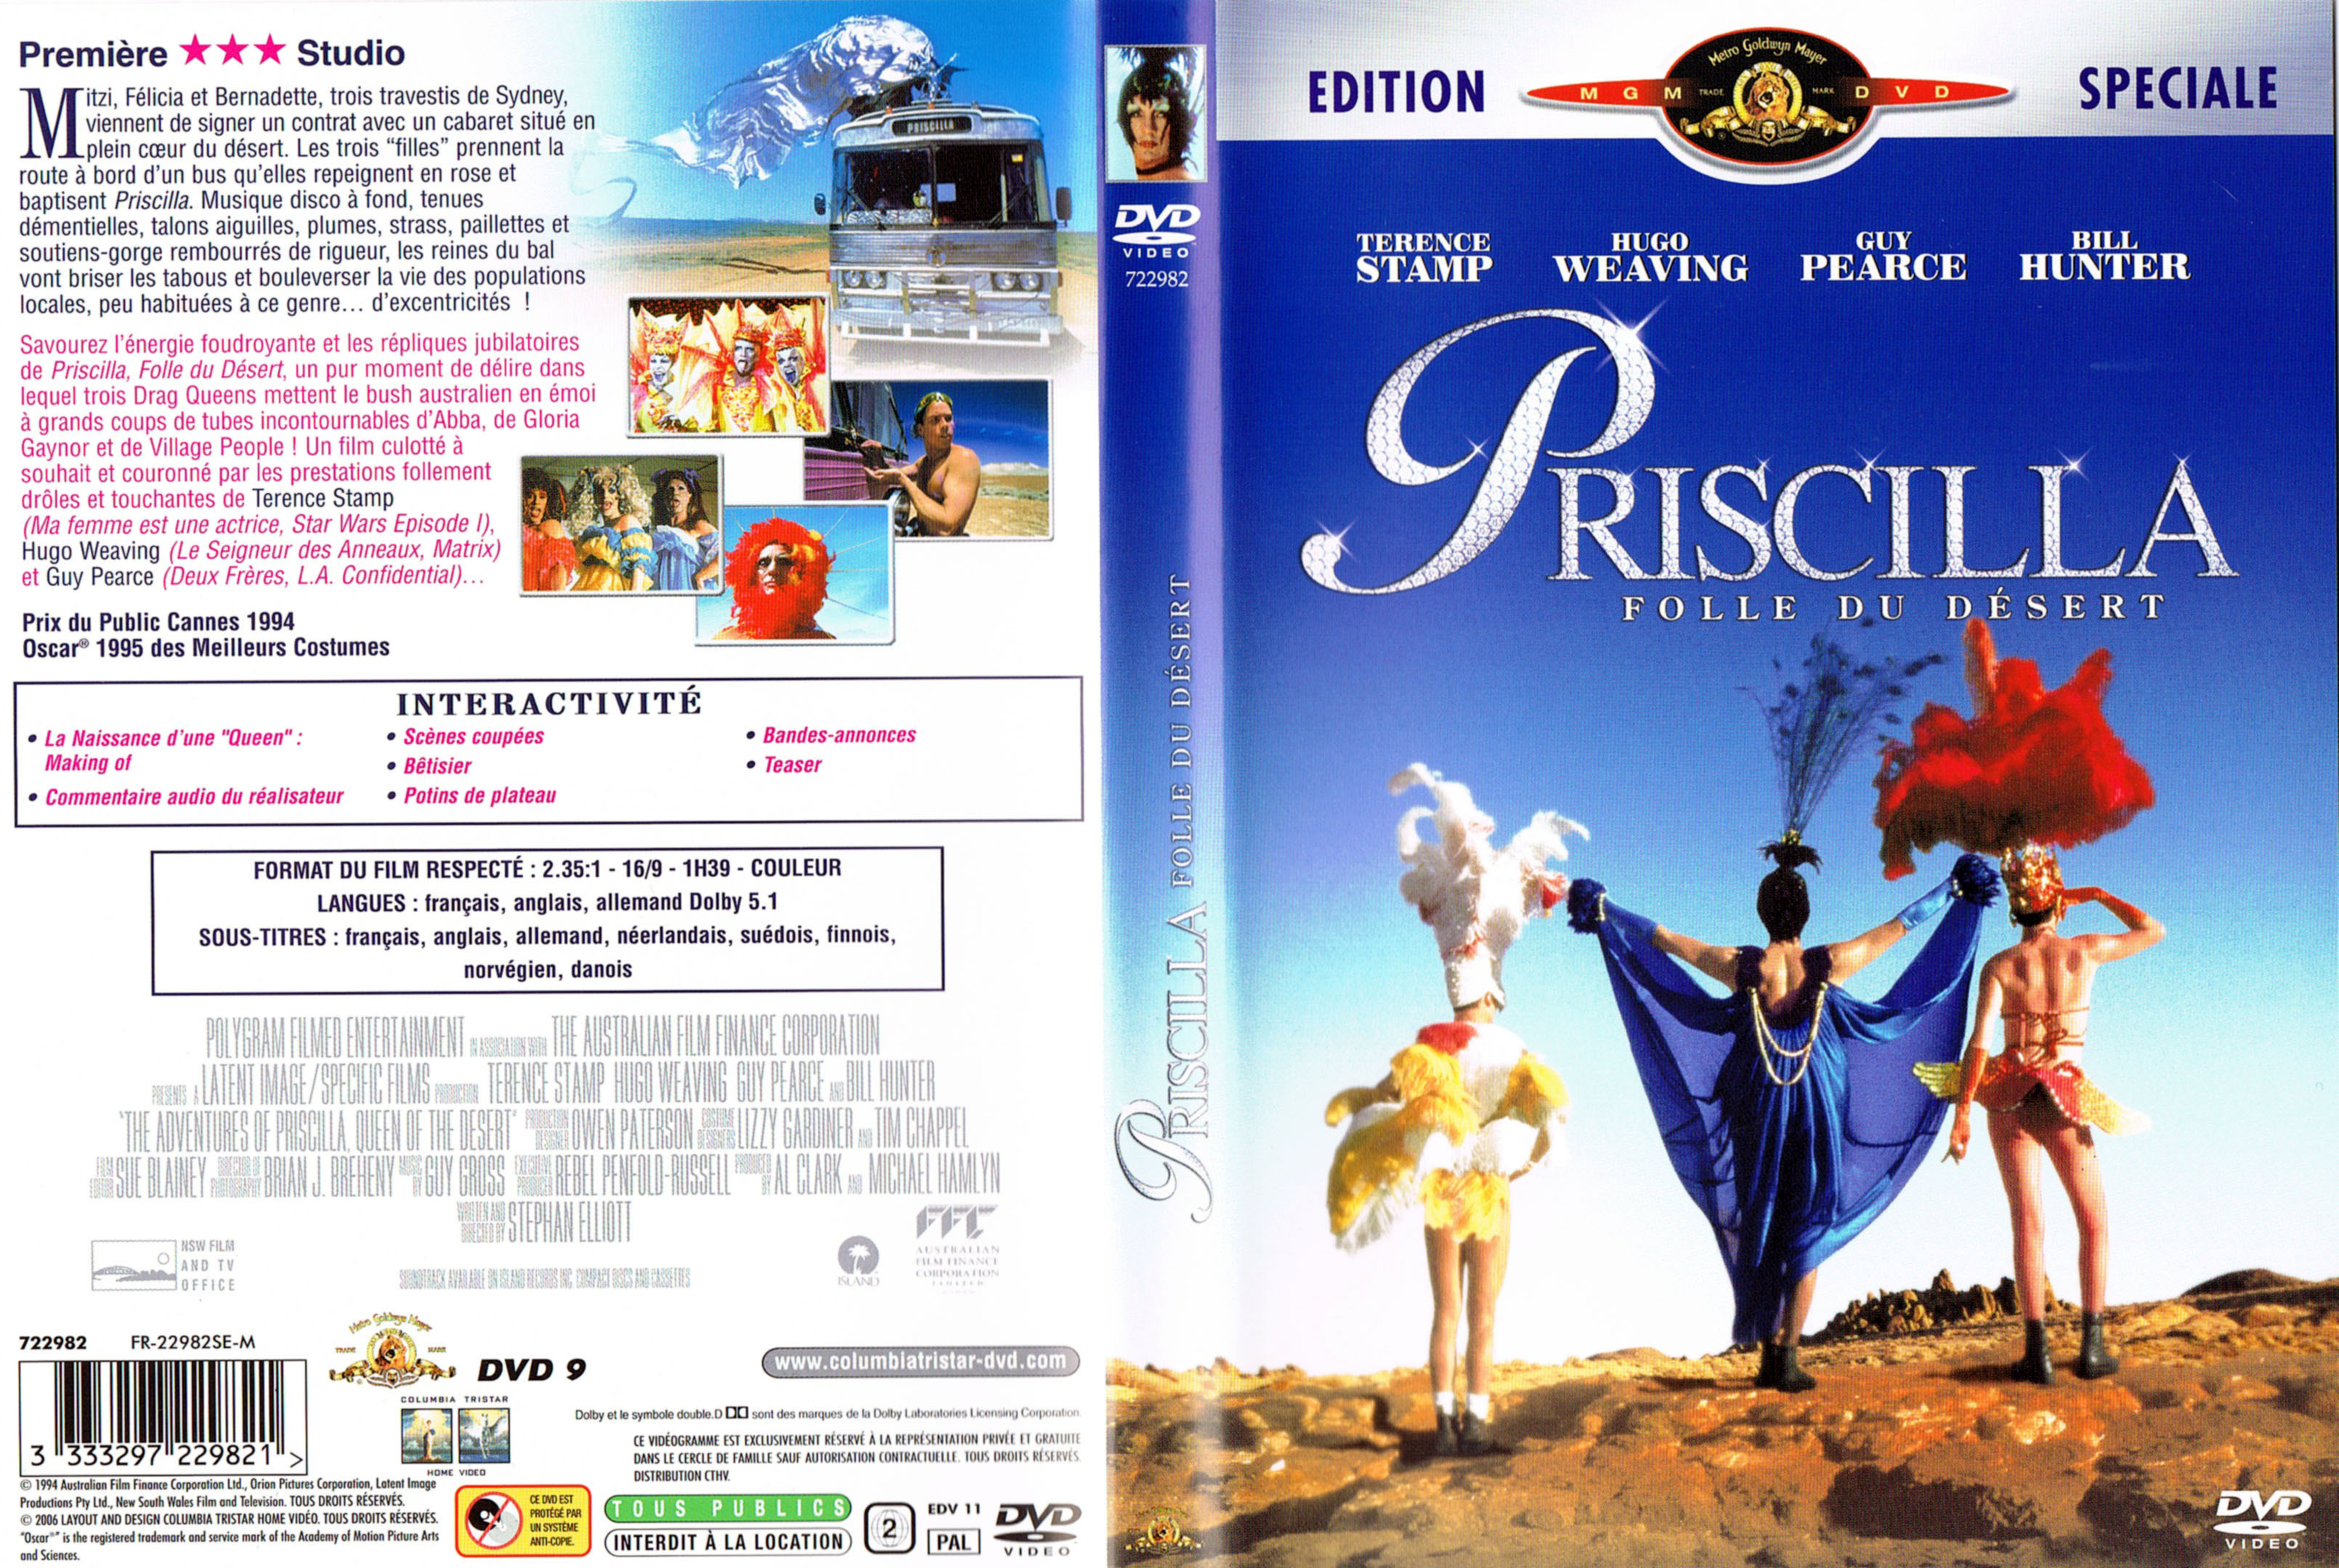 Jaquette DVD Priscilla folle du dsert v2